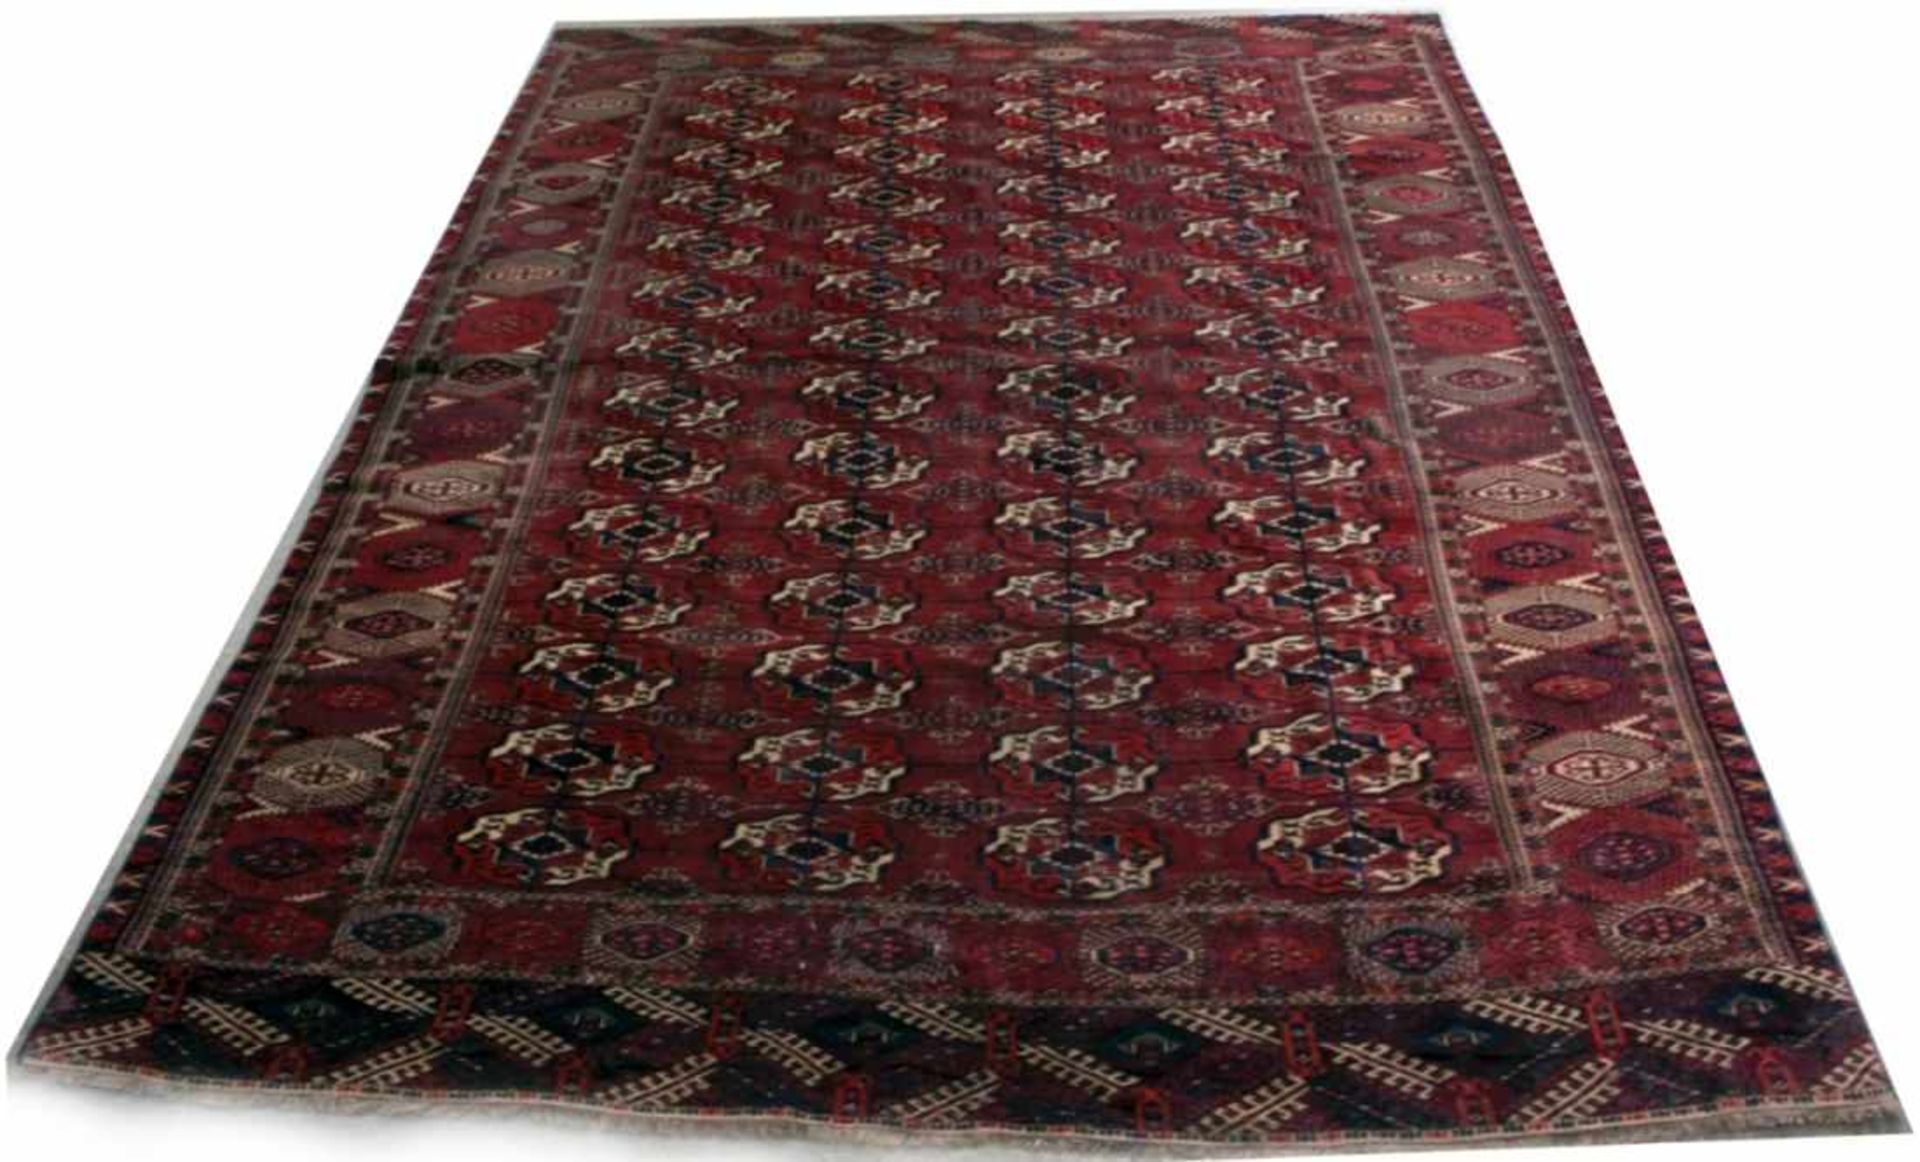 O.-Teppich, Iran/Beludsch, NO-Iran, ca. 80-100 Jahre alt, Wolle auf Wolle, 275 x 212 cm- - -20.